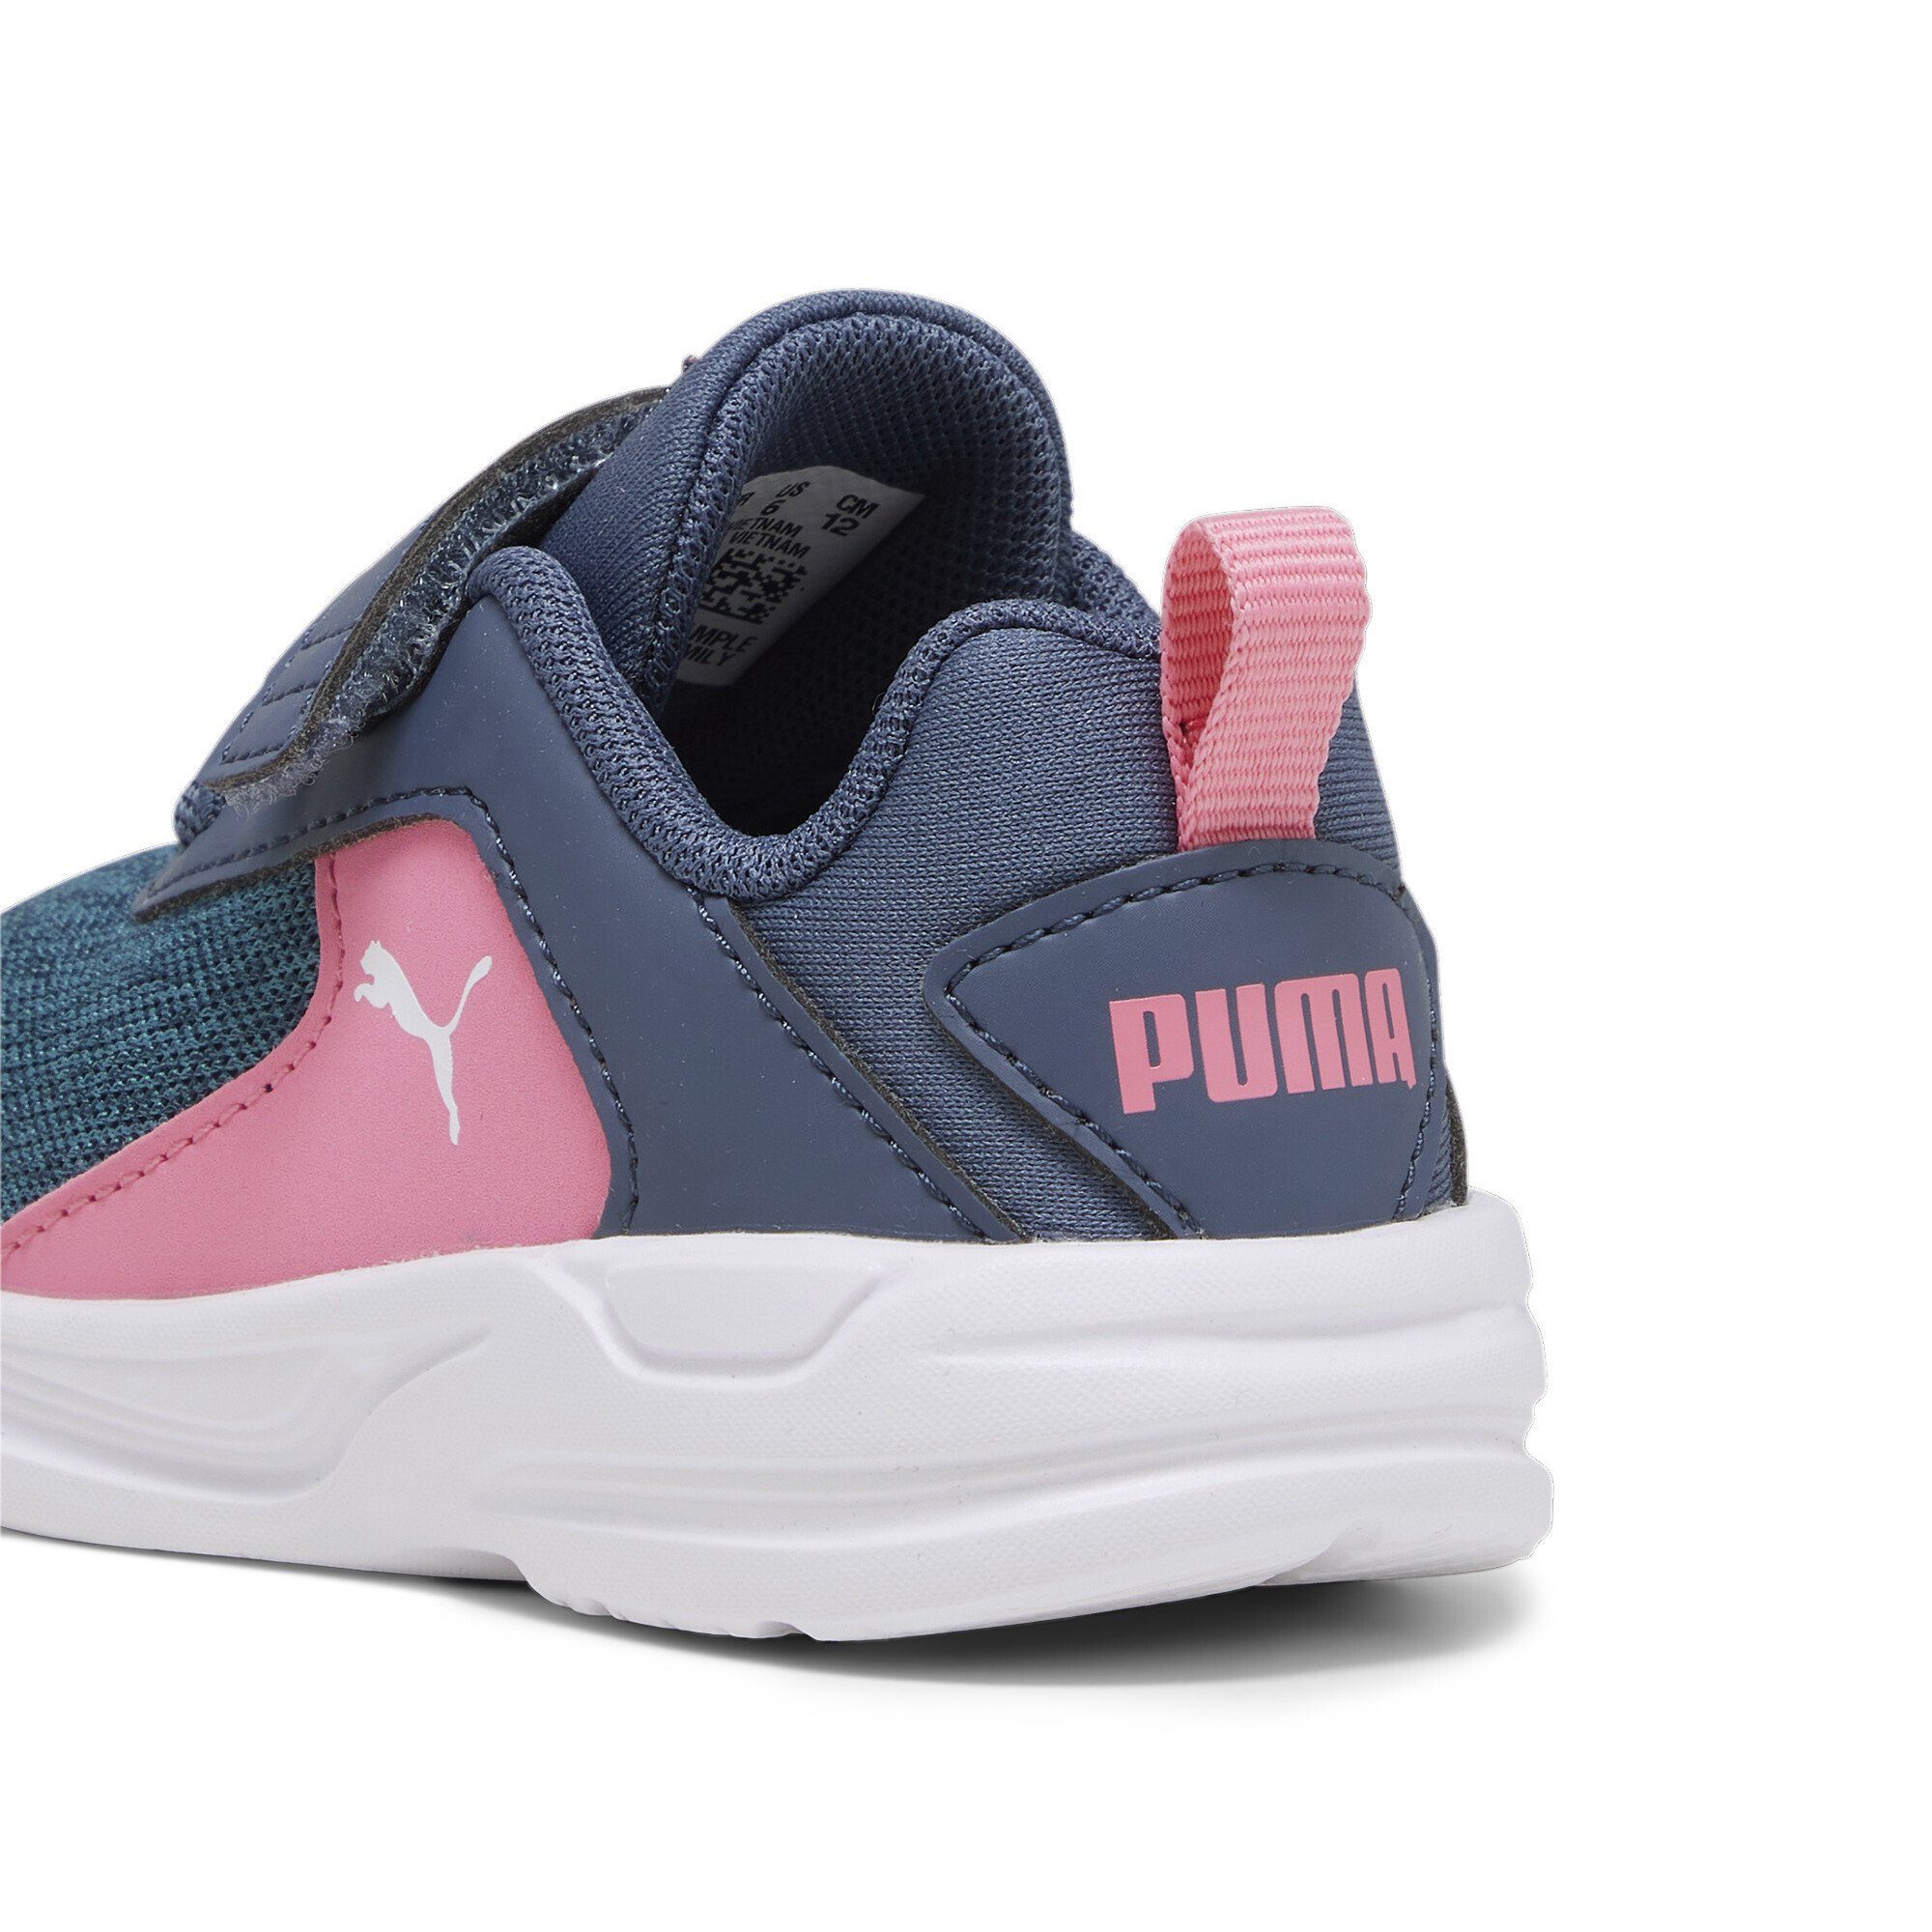 PUMA Comet 2 Alt Inky Blue V Pink Sneaker Strawberry Burst Laufschuh Kinder